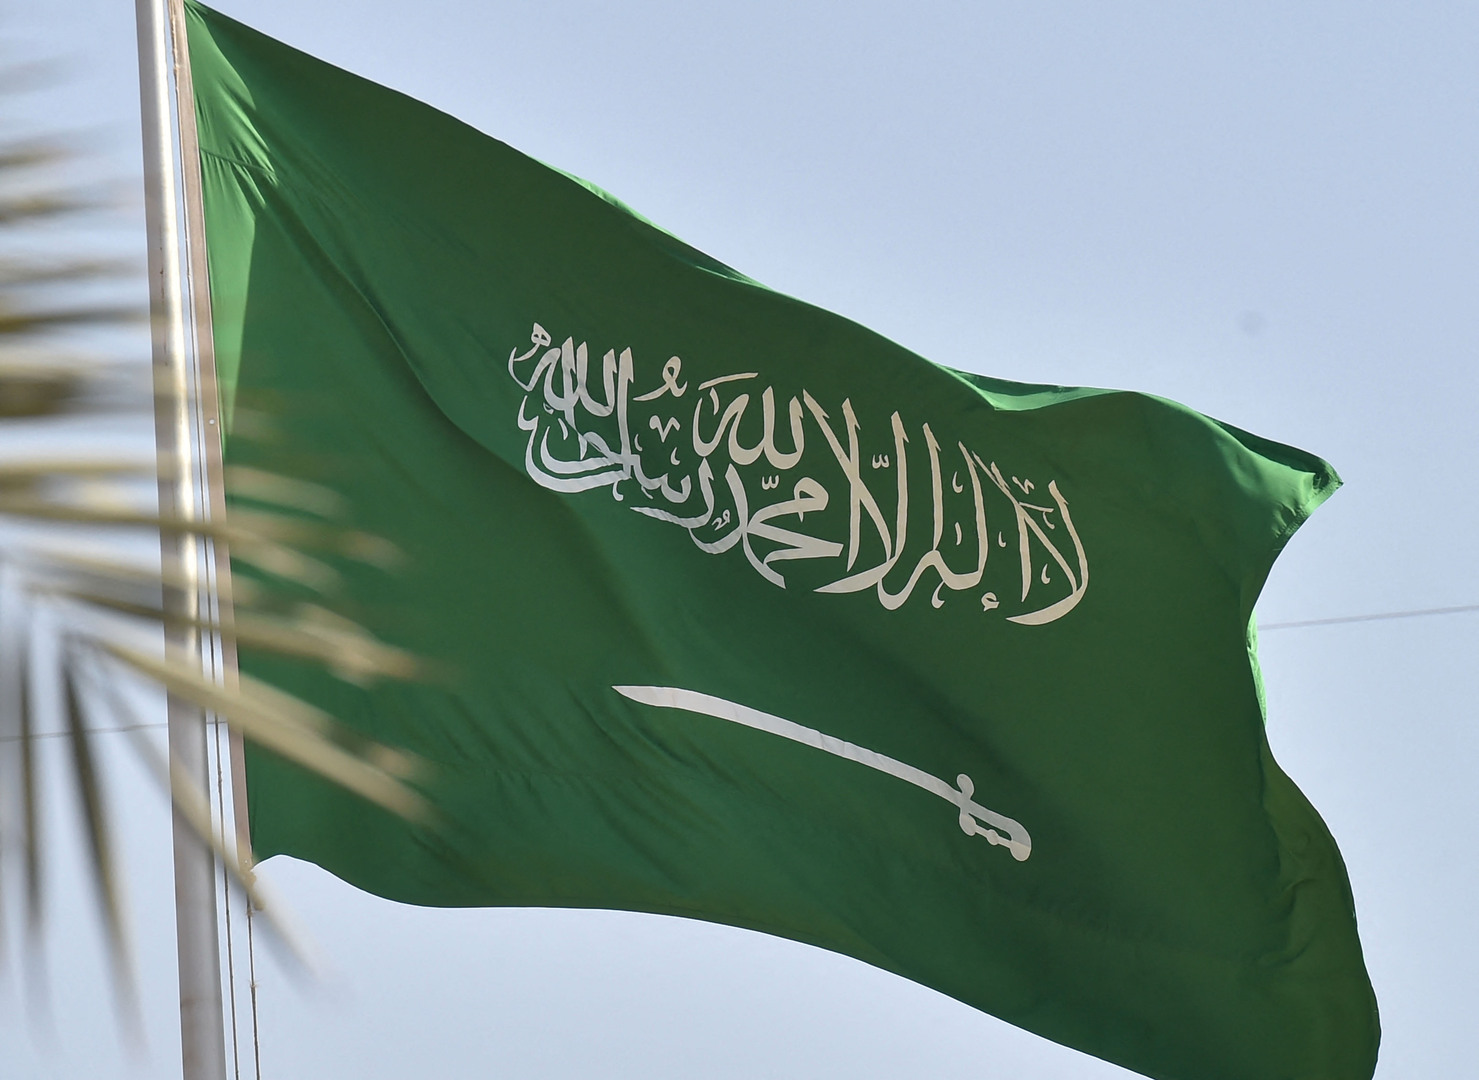 السعودية تكشف عن المحصول الأكثر ملاءمة للتطوير وتعزيز الأمن الغذائي